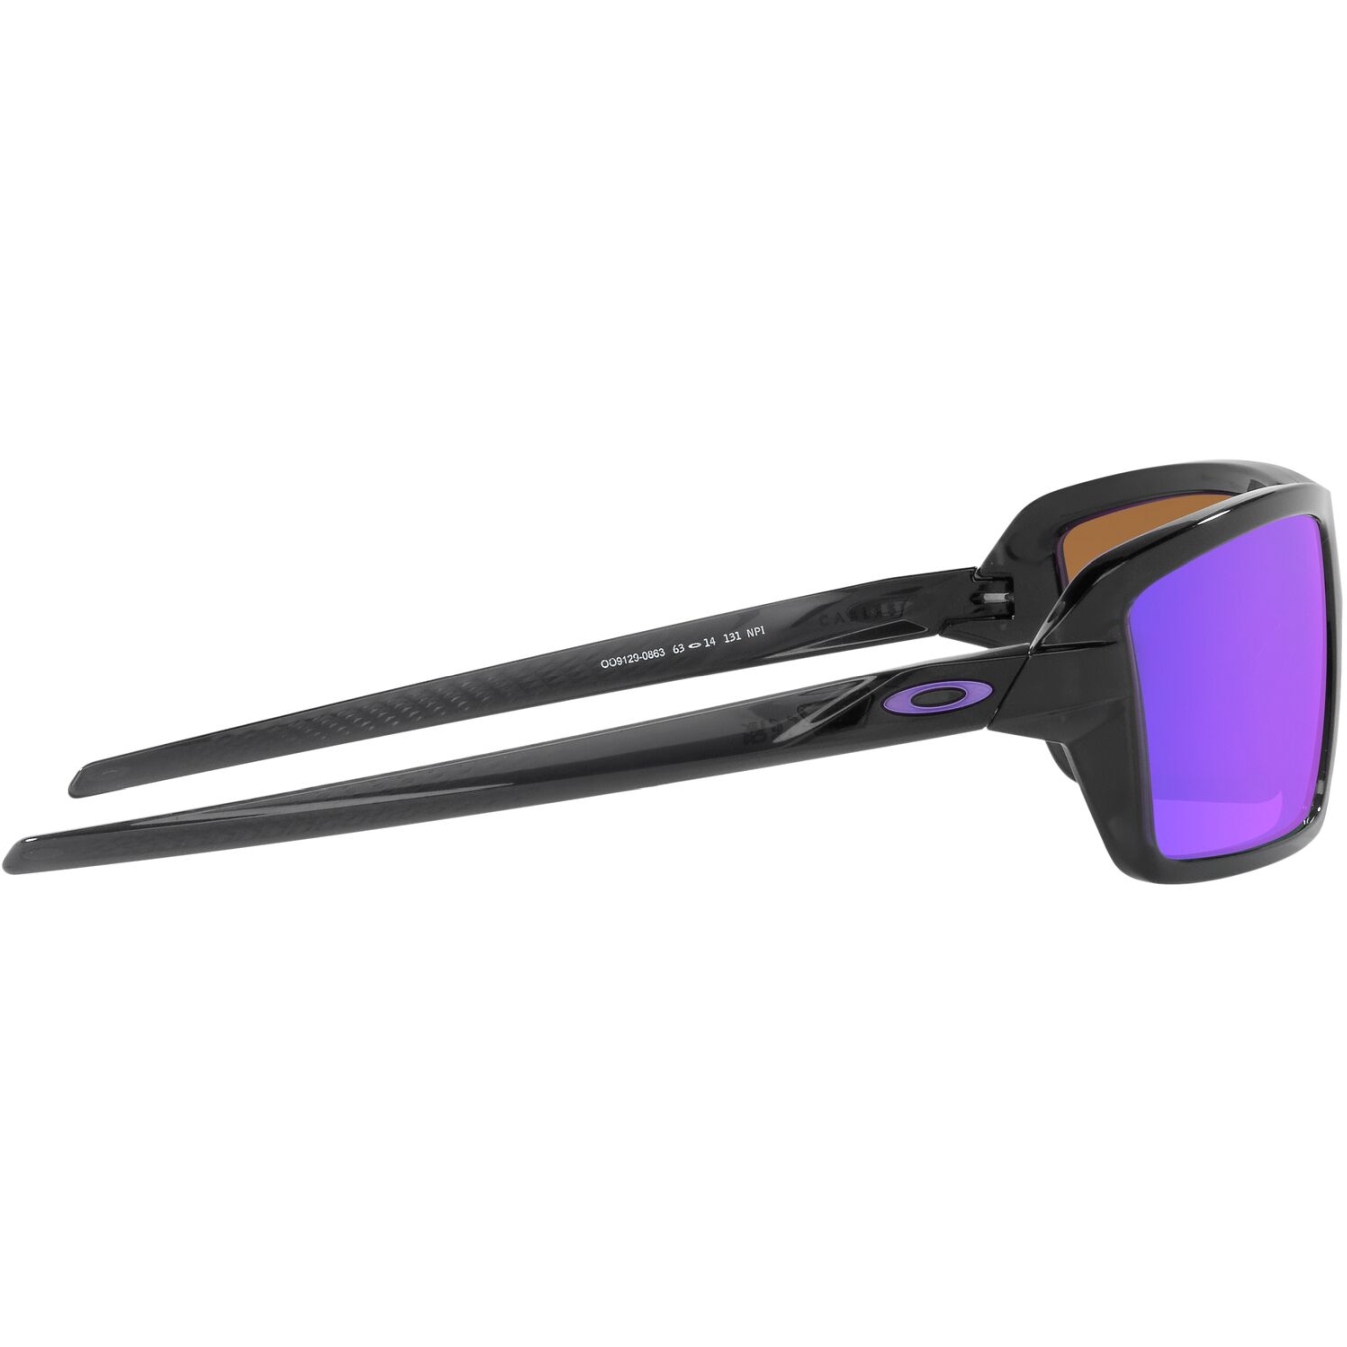 Oakley Cables Glasses - Black Ink/Prizm Violet - OO9129-0863